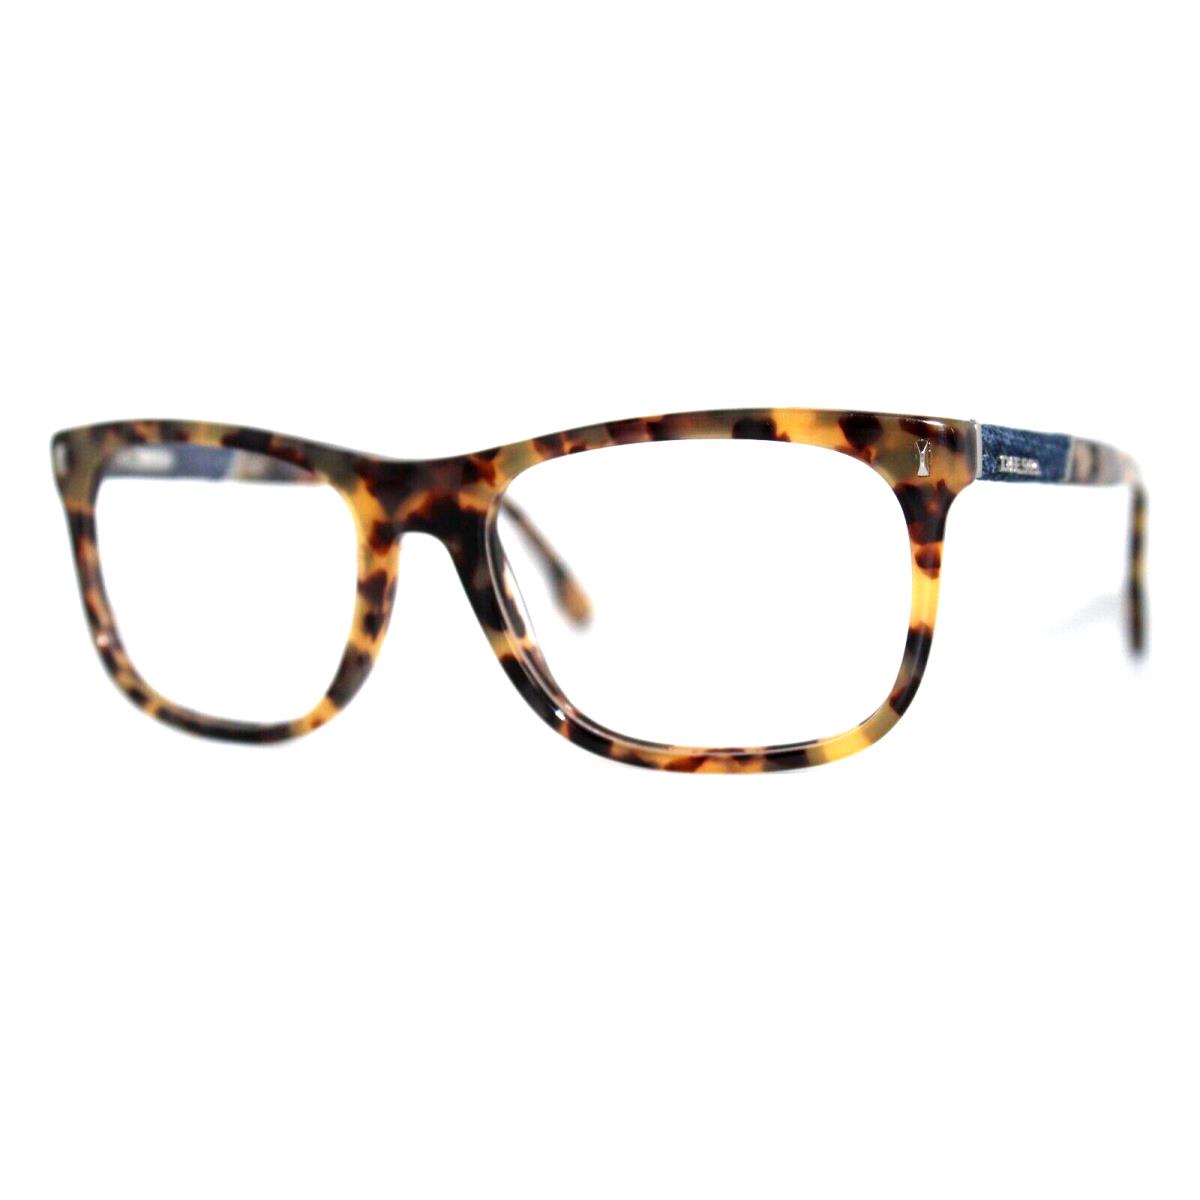 Diesel DL5157 053 Havana Eyeglasses Frames 54-17-145MM W/case